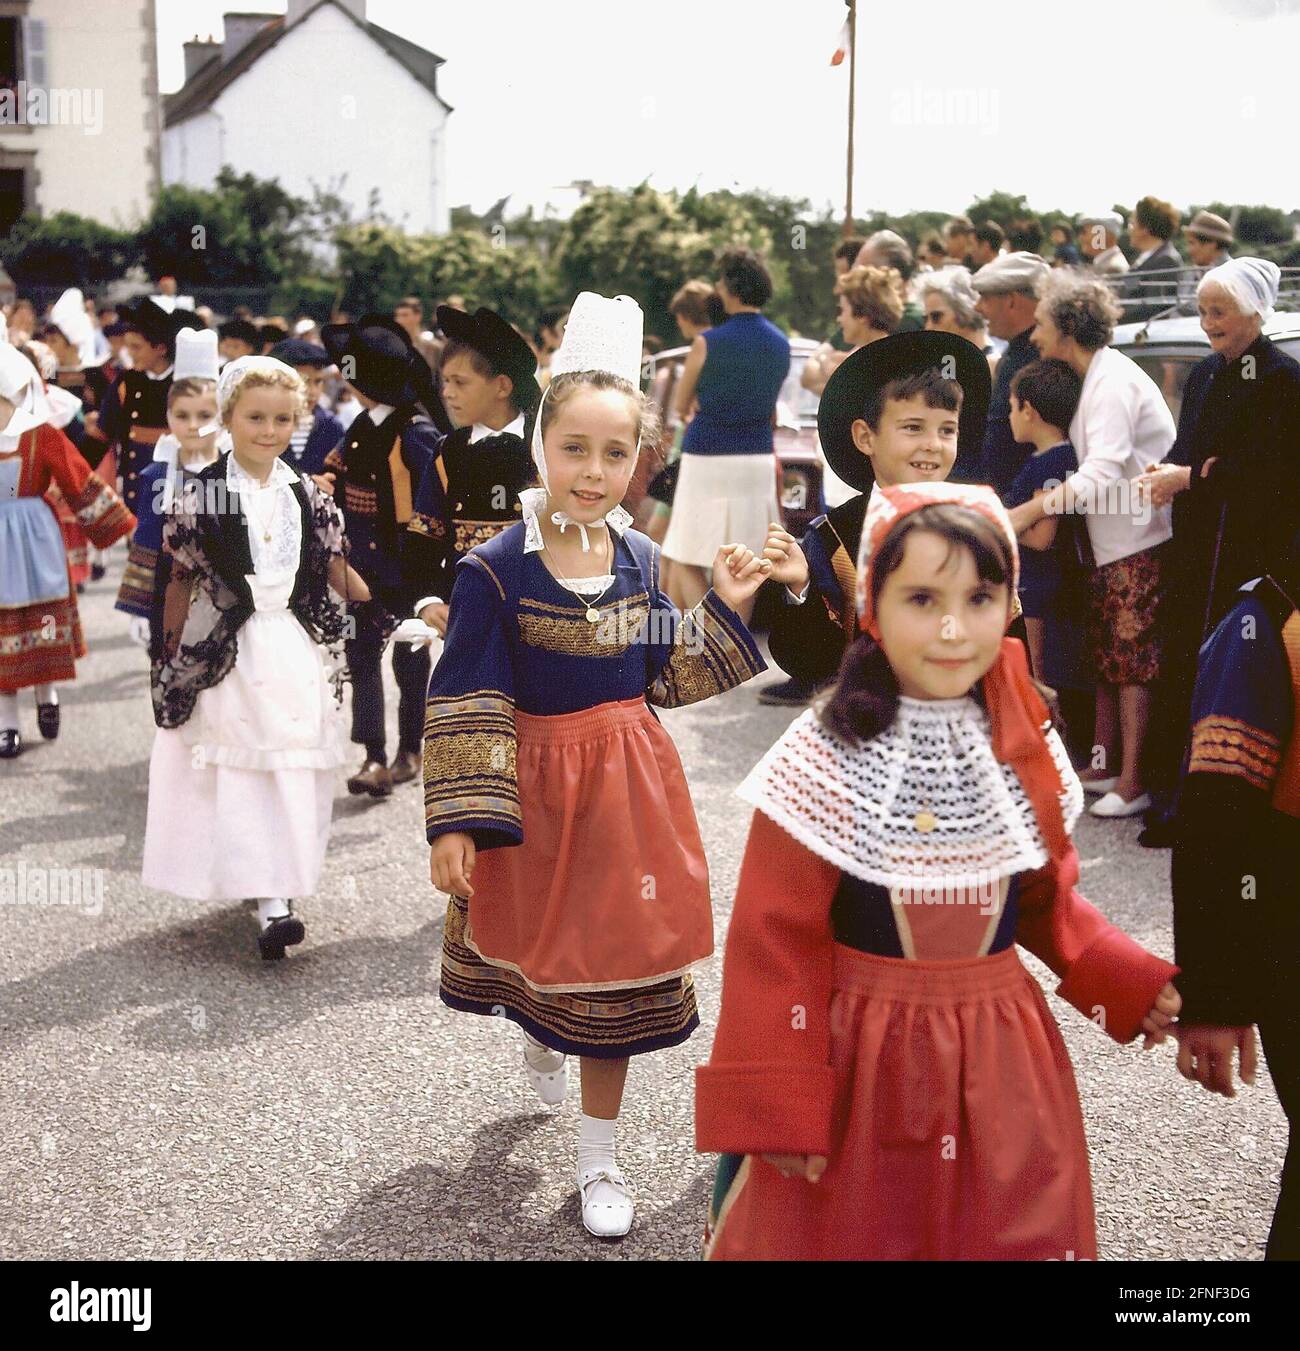 Ragazze e ragazzi in costume bretone. [traduzione automatizzata] Foto stock  - Alamy